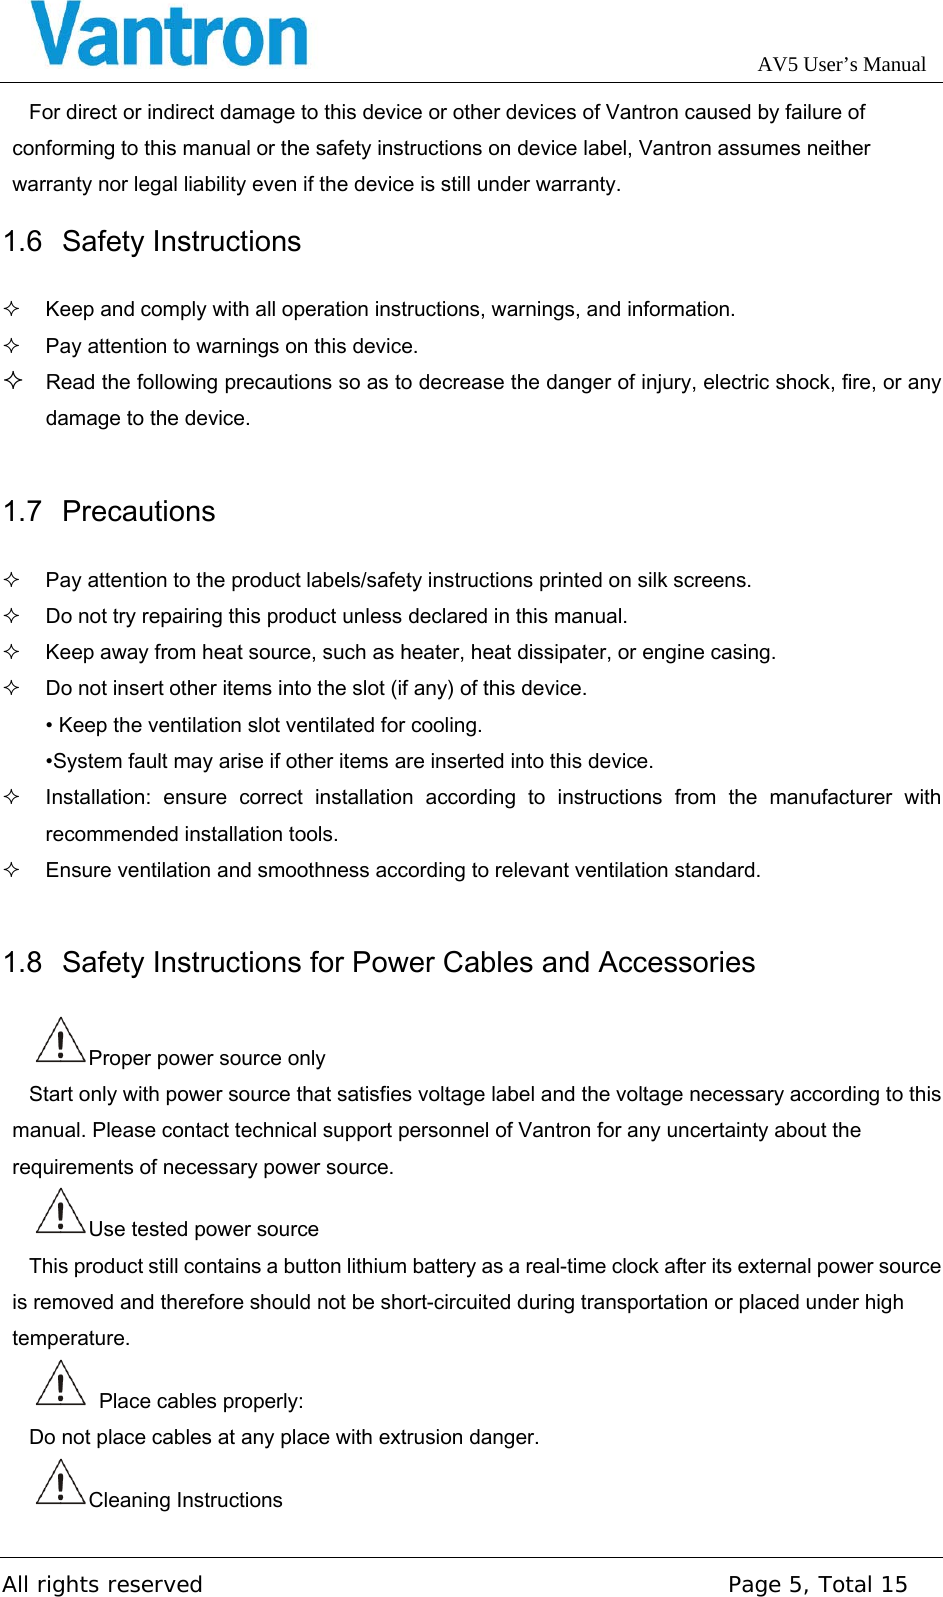 Page 5 of Chengdu Vantron Technology AV5AV72 M2M Gateway application User Manual AV5